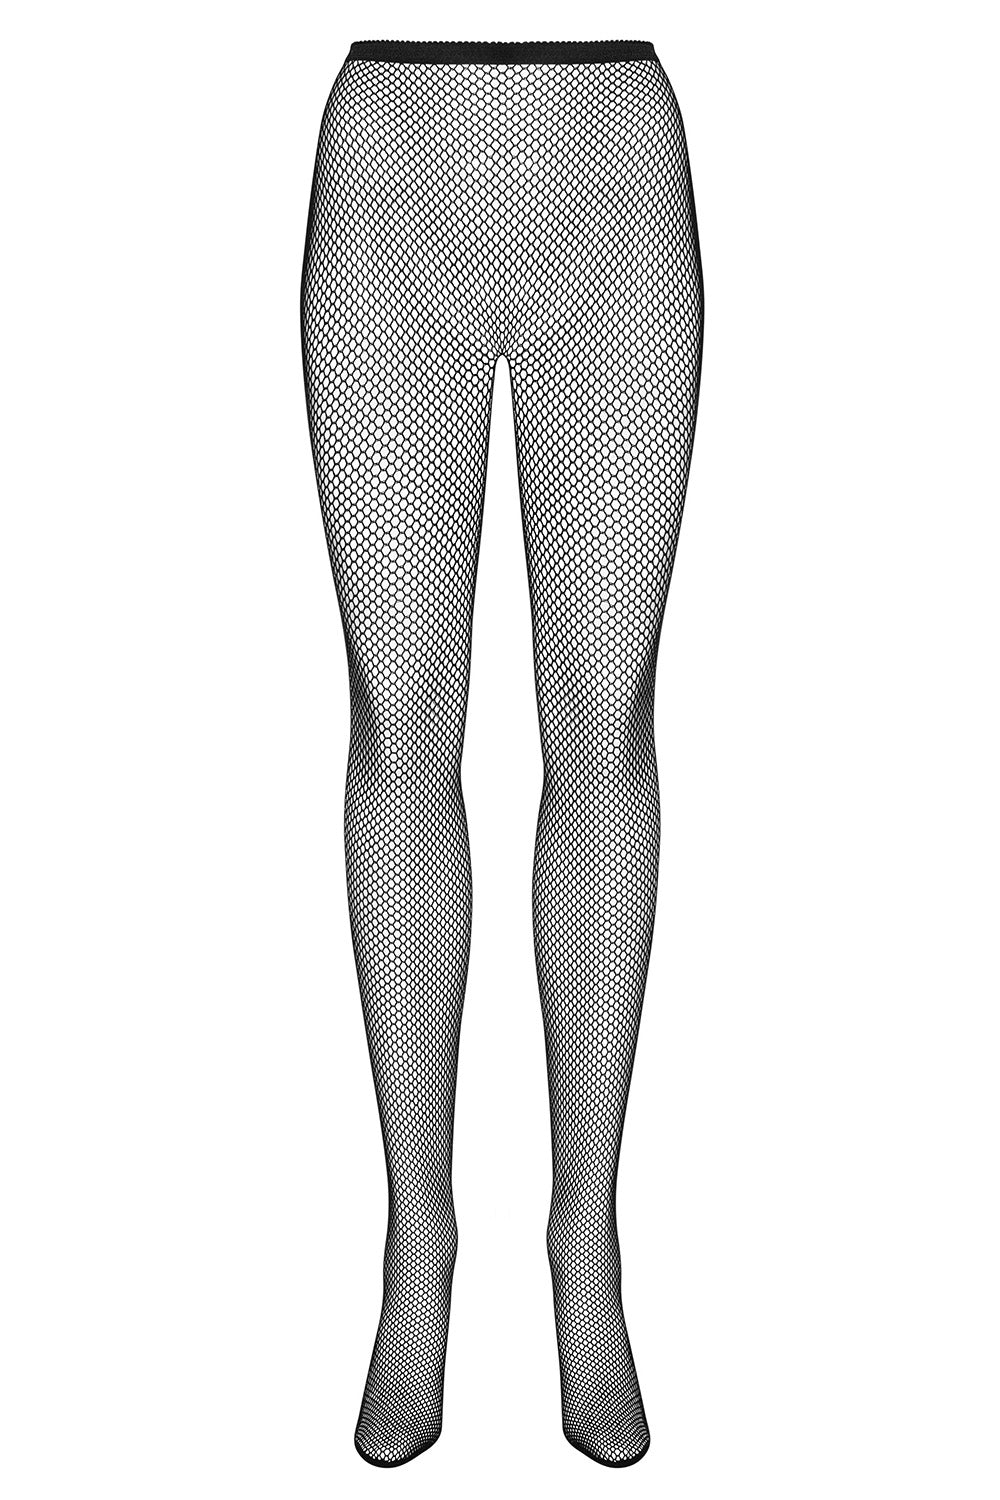 Obsessive, Enjoy sort net strømperbukser - Opnå sexede, uimodståelige ben med disse sorte net strømperbukser. Perfekte til forførende nætter. Køb dem nu!